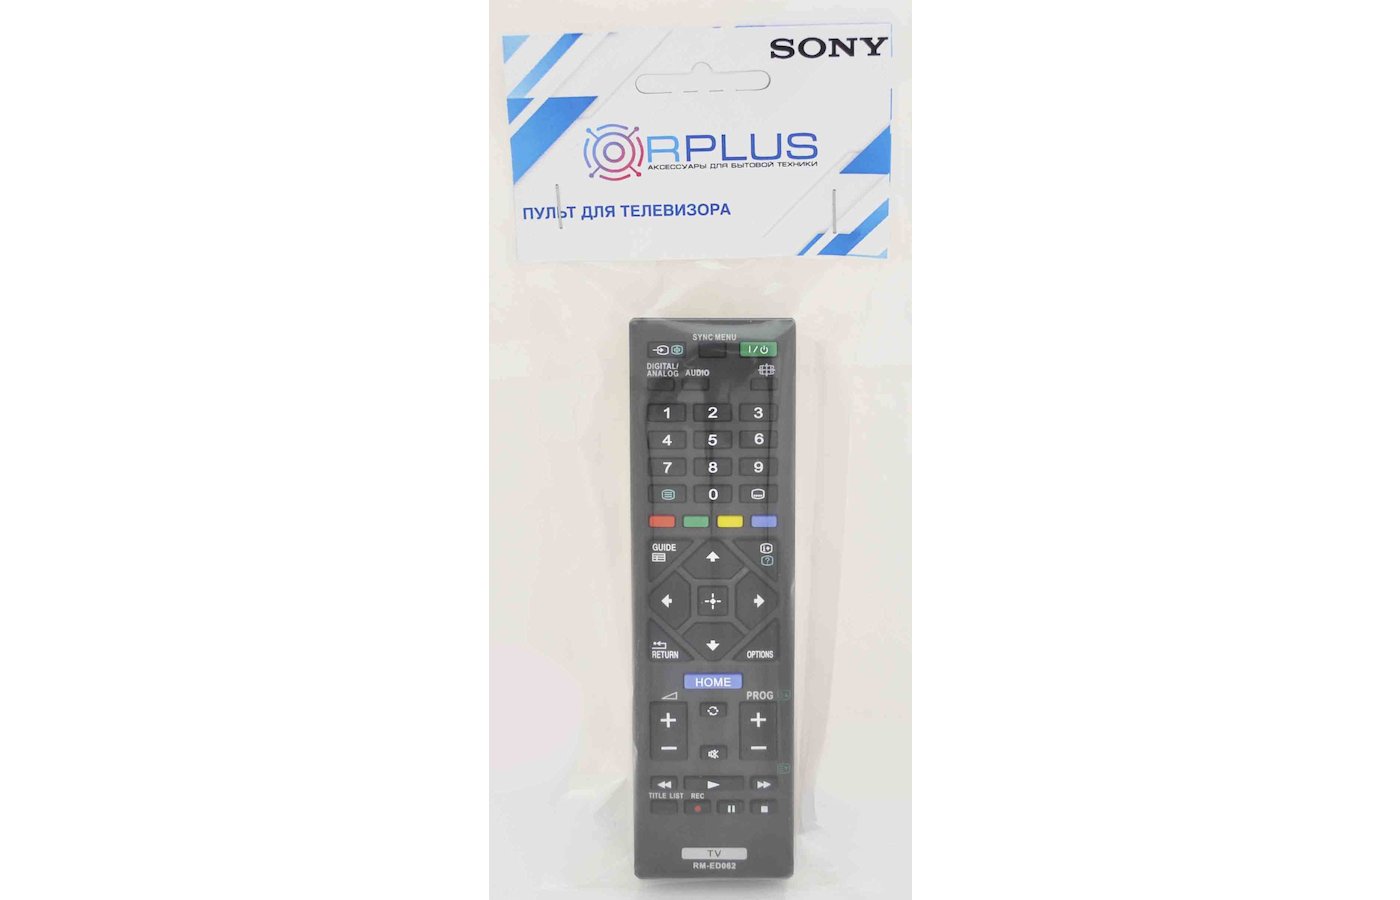 Телевизор сони rm. Пульт для телевизора Sony RM-ed062. Ed062 пульт. RM-ed062 пульт. Пульт для Sony RM-ed062 LCD TV.